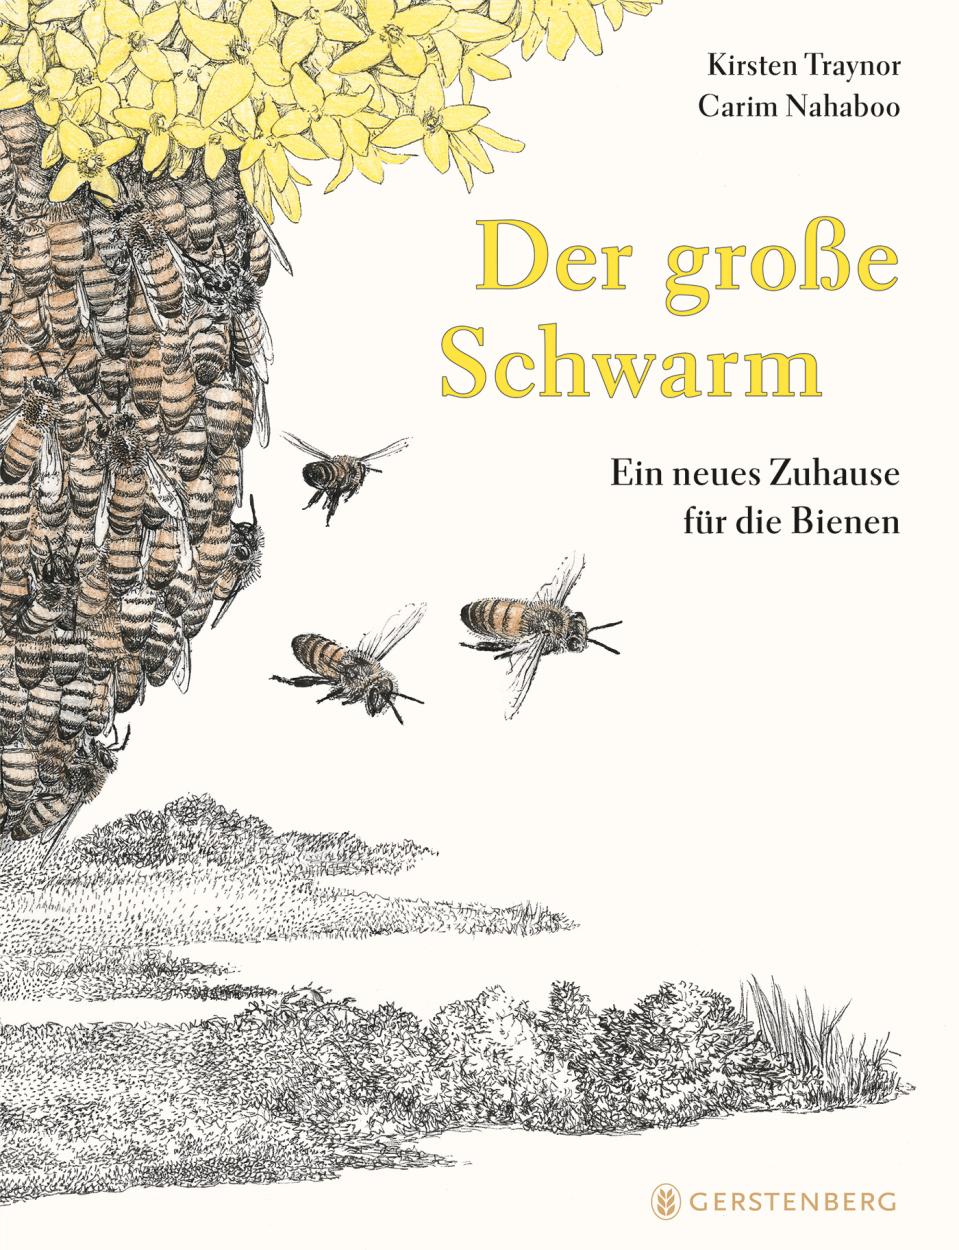 Der große Schwarm,  K.Traynor, C. Nahaboo, Gerstenberg Verlag